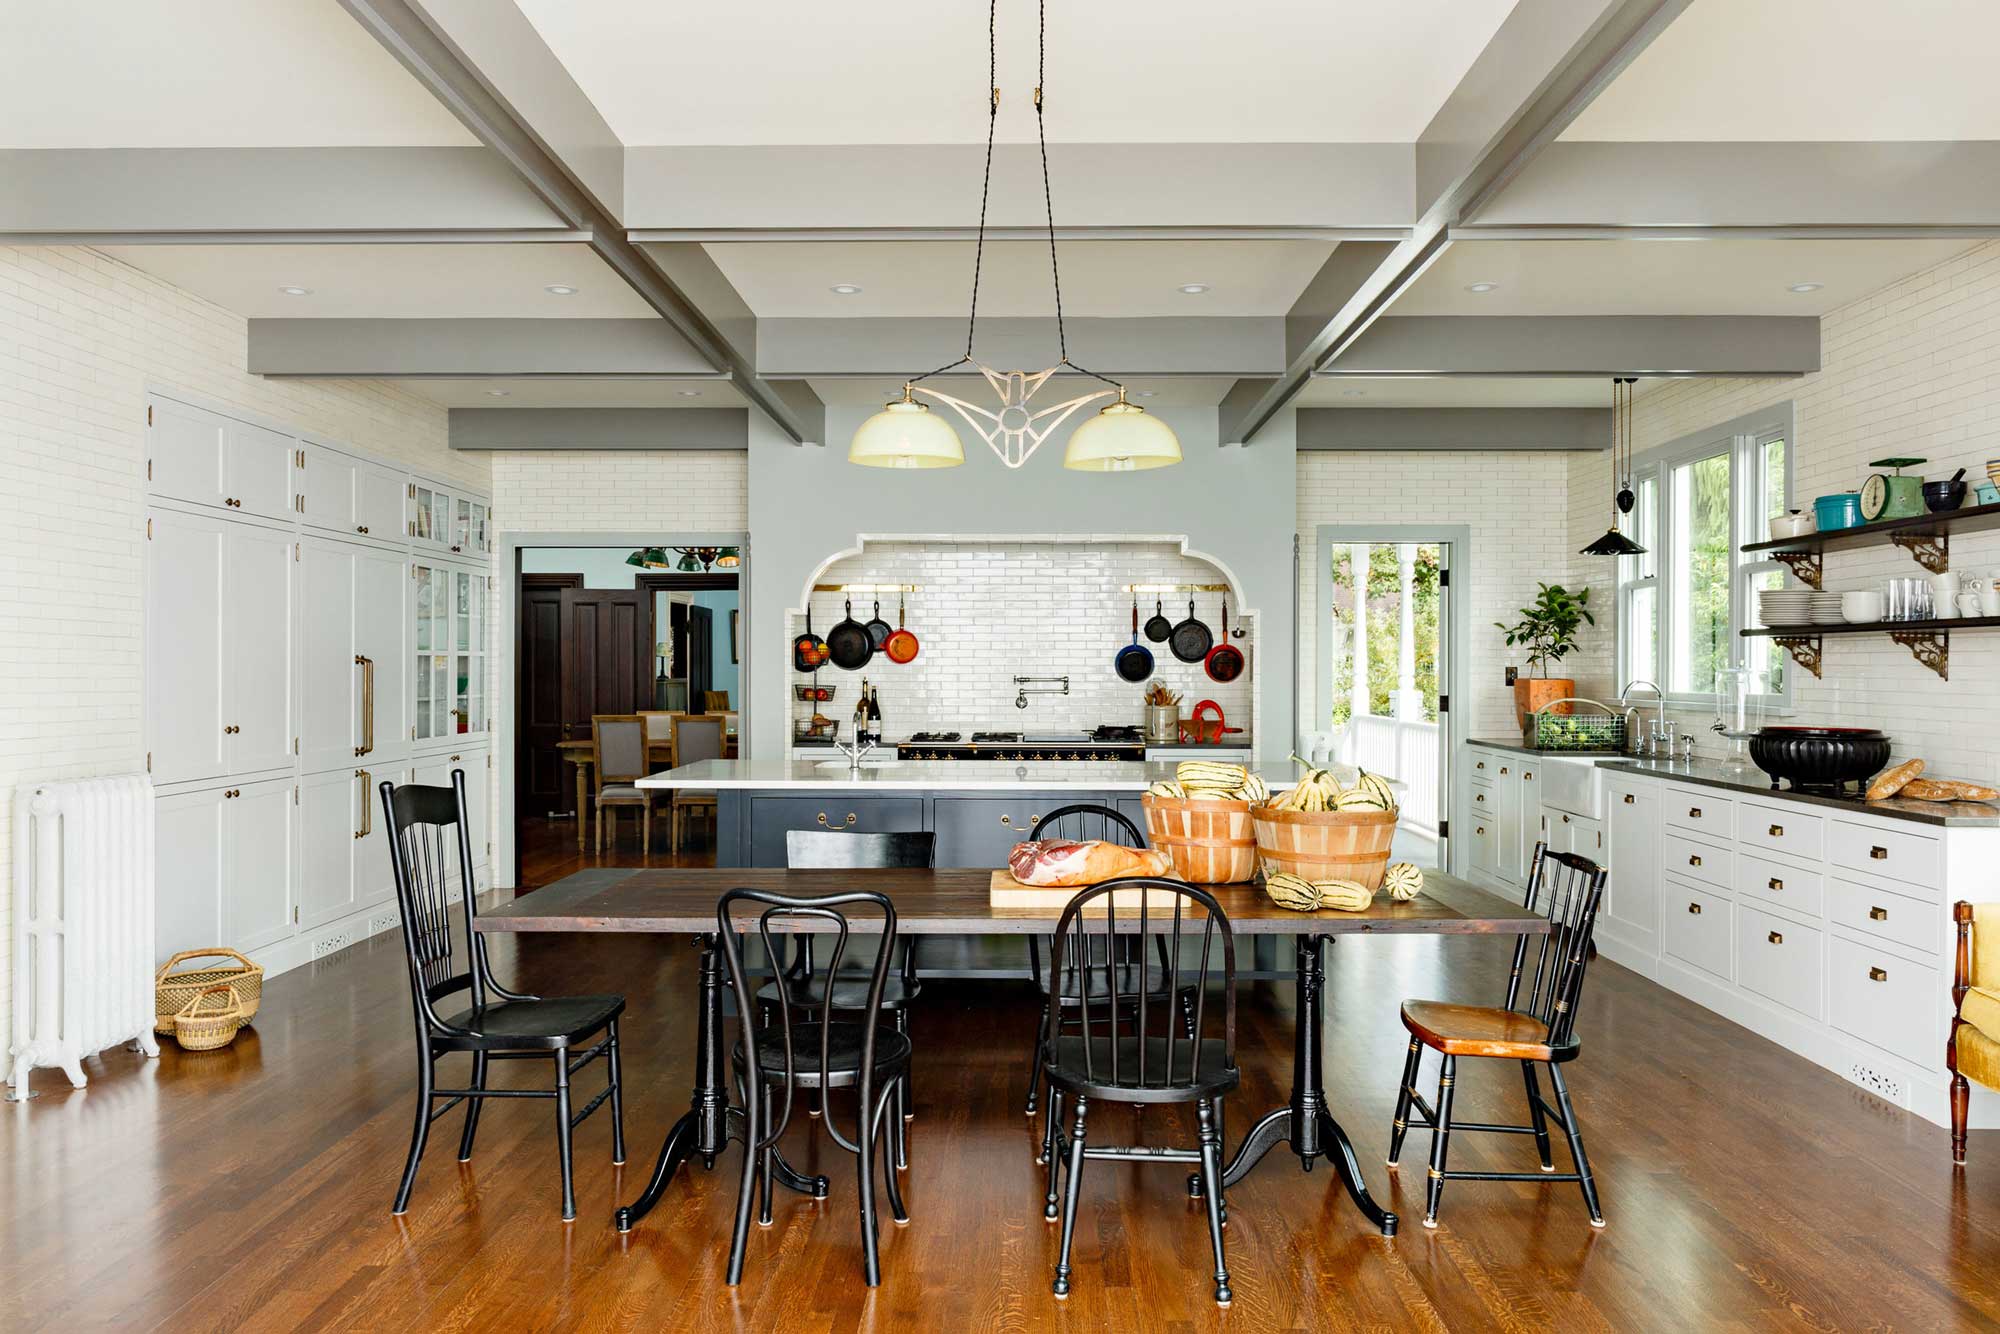 Interior Designers Share Their Best Kitchen Renovation Ideas